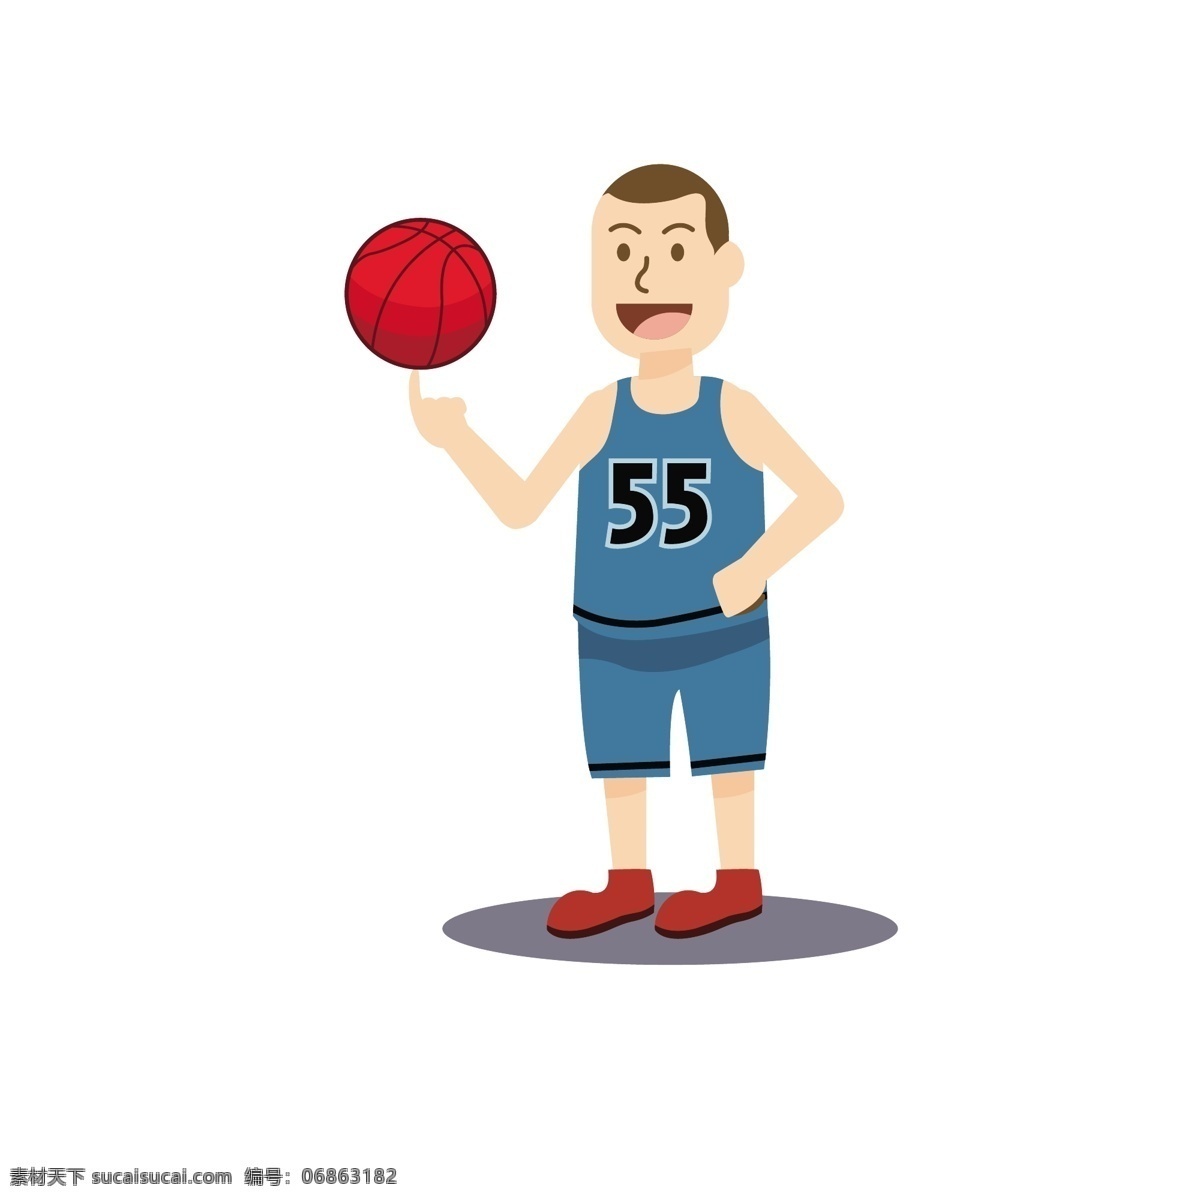 卡通 旋转 篮球 矢量 旋转姿势 运动员 可爱 可爱的 卡通篮球 篮球运动 体育 体育运动 卡通运动员 篮球姿势 姿势